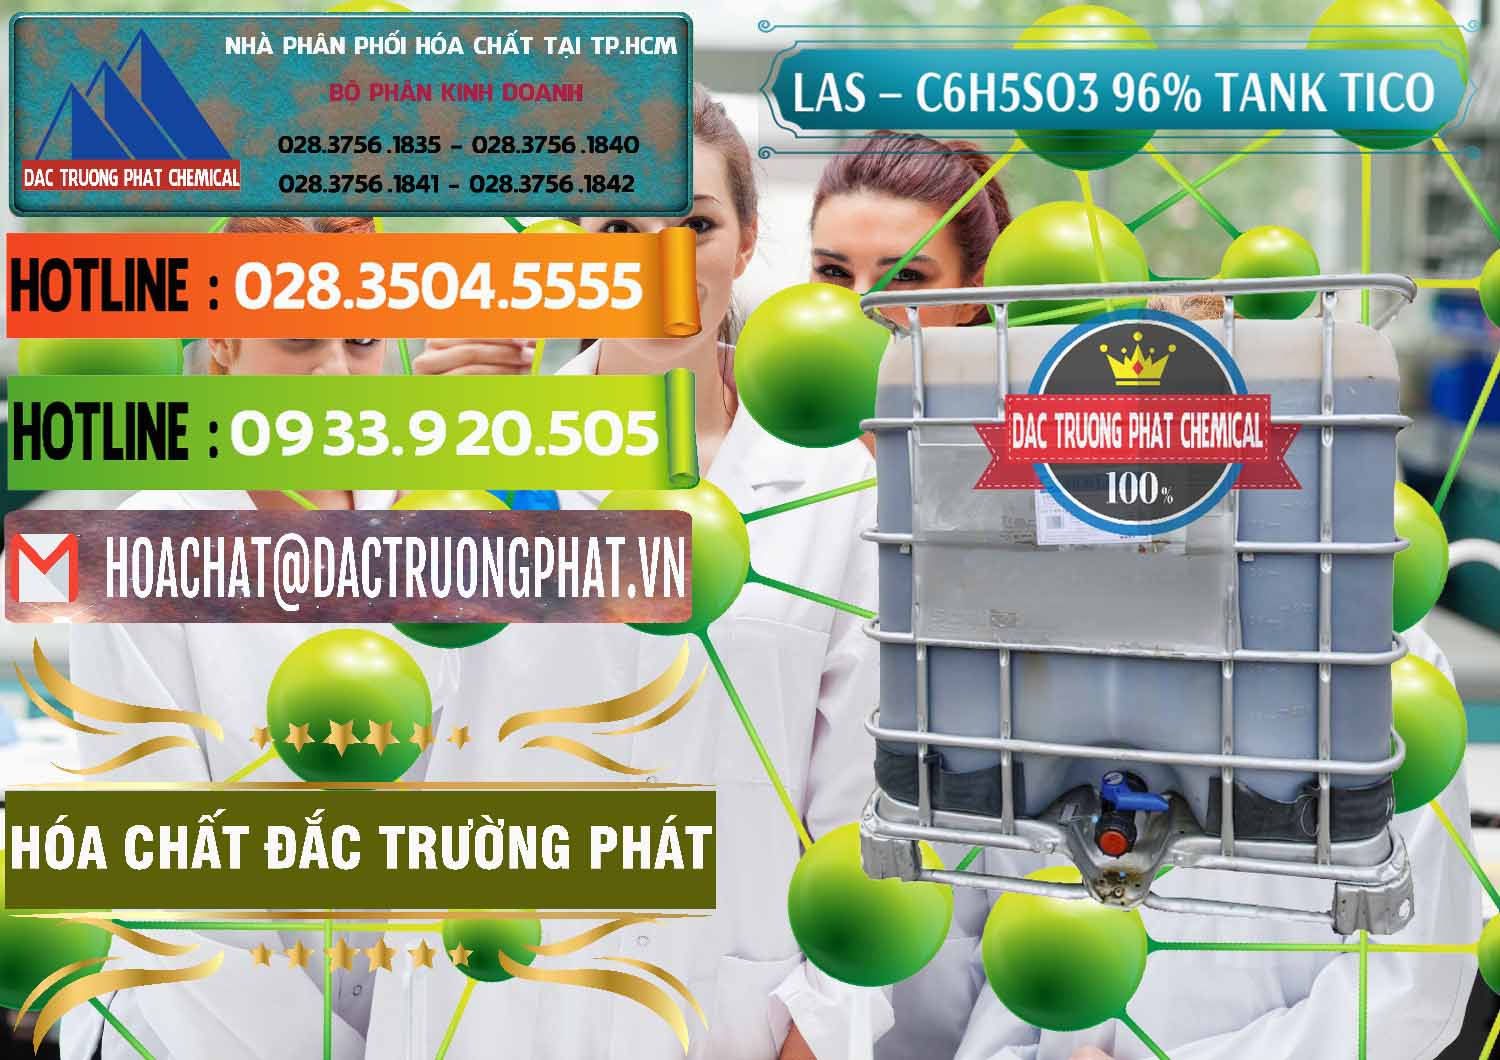 Chuyên cung cấp _ bán Chất tạo bọt Las P Tico Tank IBC Bồn Việt Nam - 0488 - Cty kinh doanh - phân phối hóa chất tại TP.HCM - cungcaphoachat.com.vn